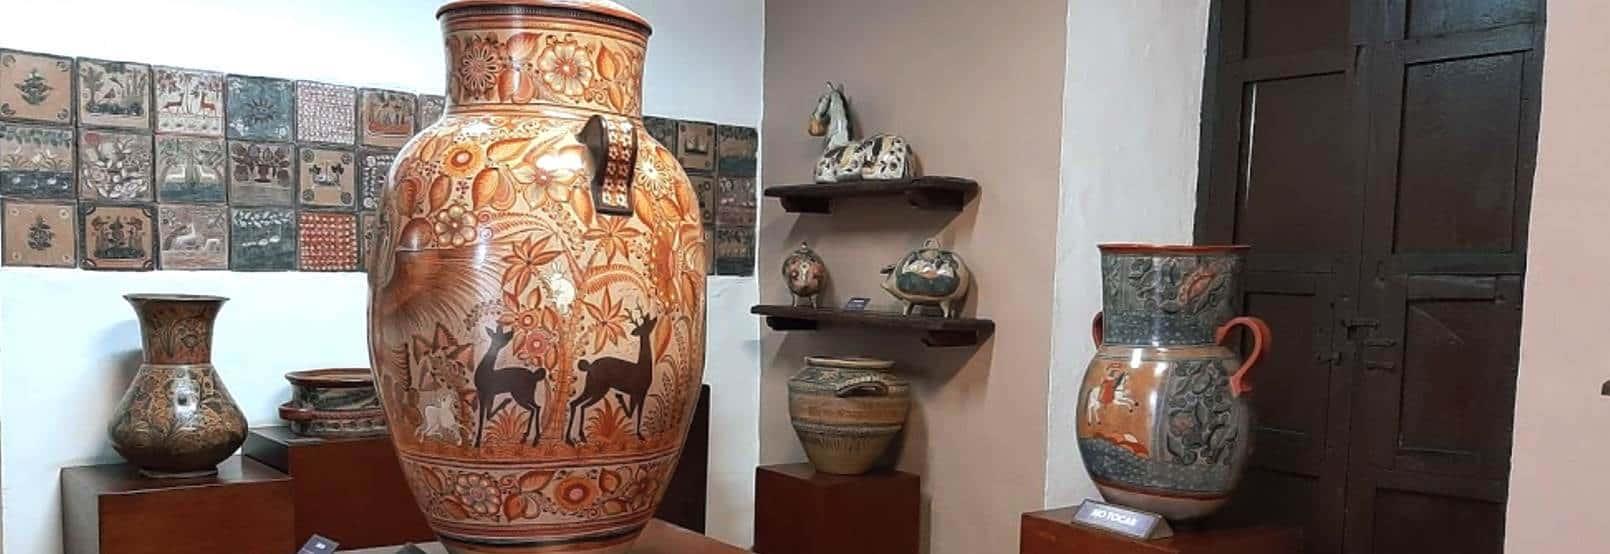 Museo Regional de la Cerámica de Tlaquepaque. Foto Destinos México